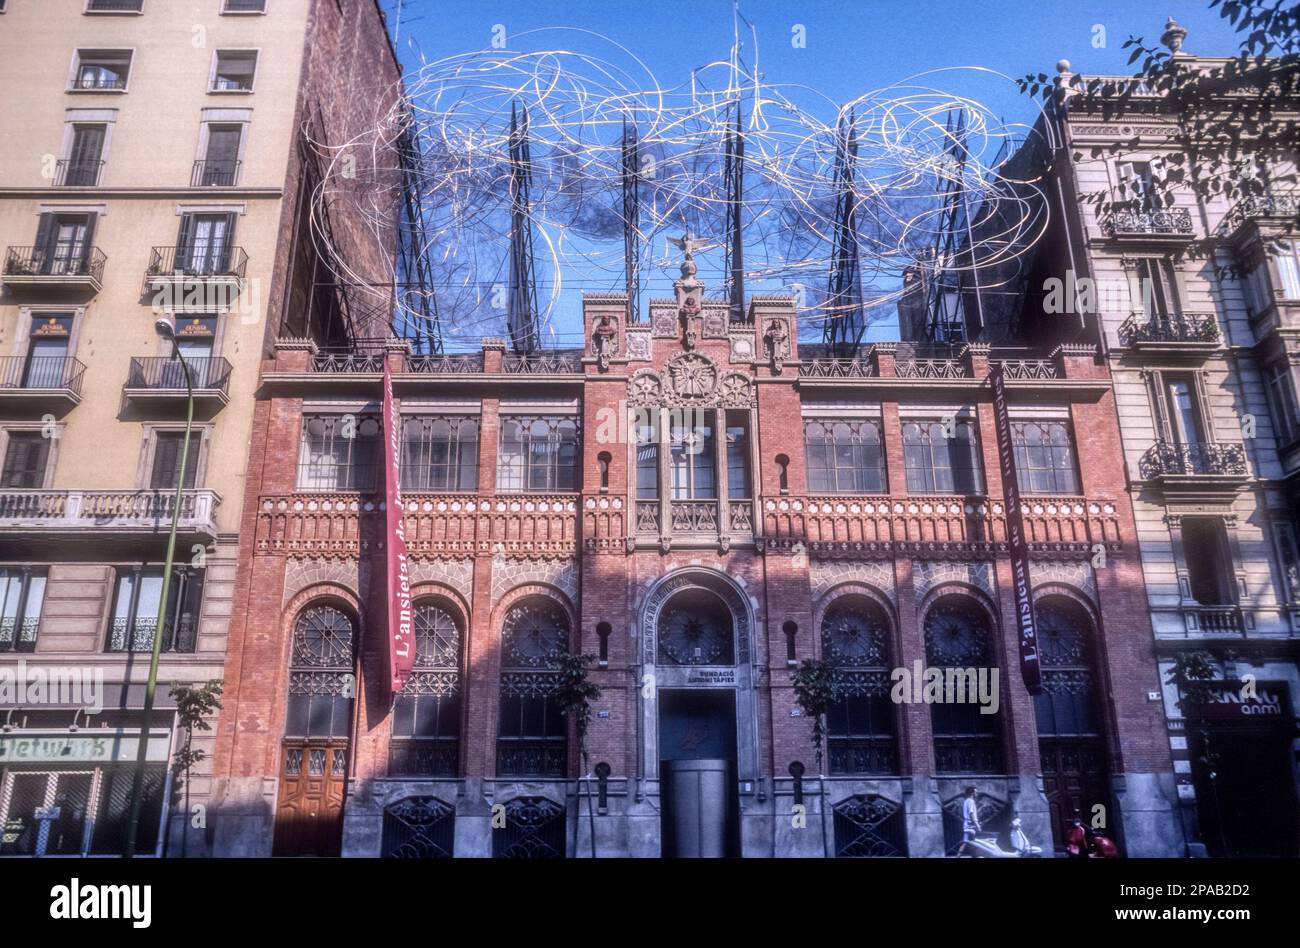 La Fundació Antoni Tàpies à Carrer d'Aragó, Barcelone, est dans l'ancienne Casa Montaner i Simon conçue par Lluís Domènech i Montaner. La sculpture de 1990 sur le toit est Núvol i camira ou nuage et chaise, par Tàpies. Banque D'Images